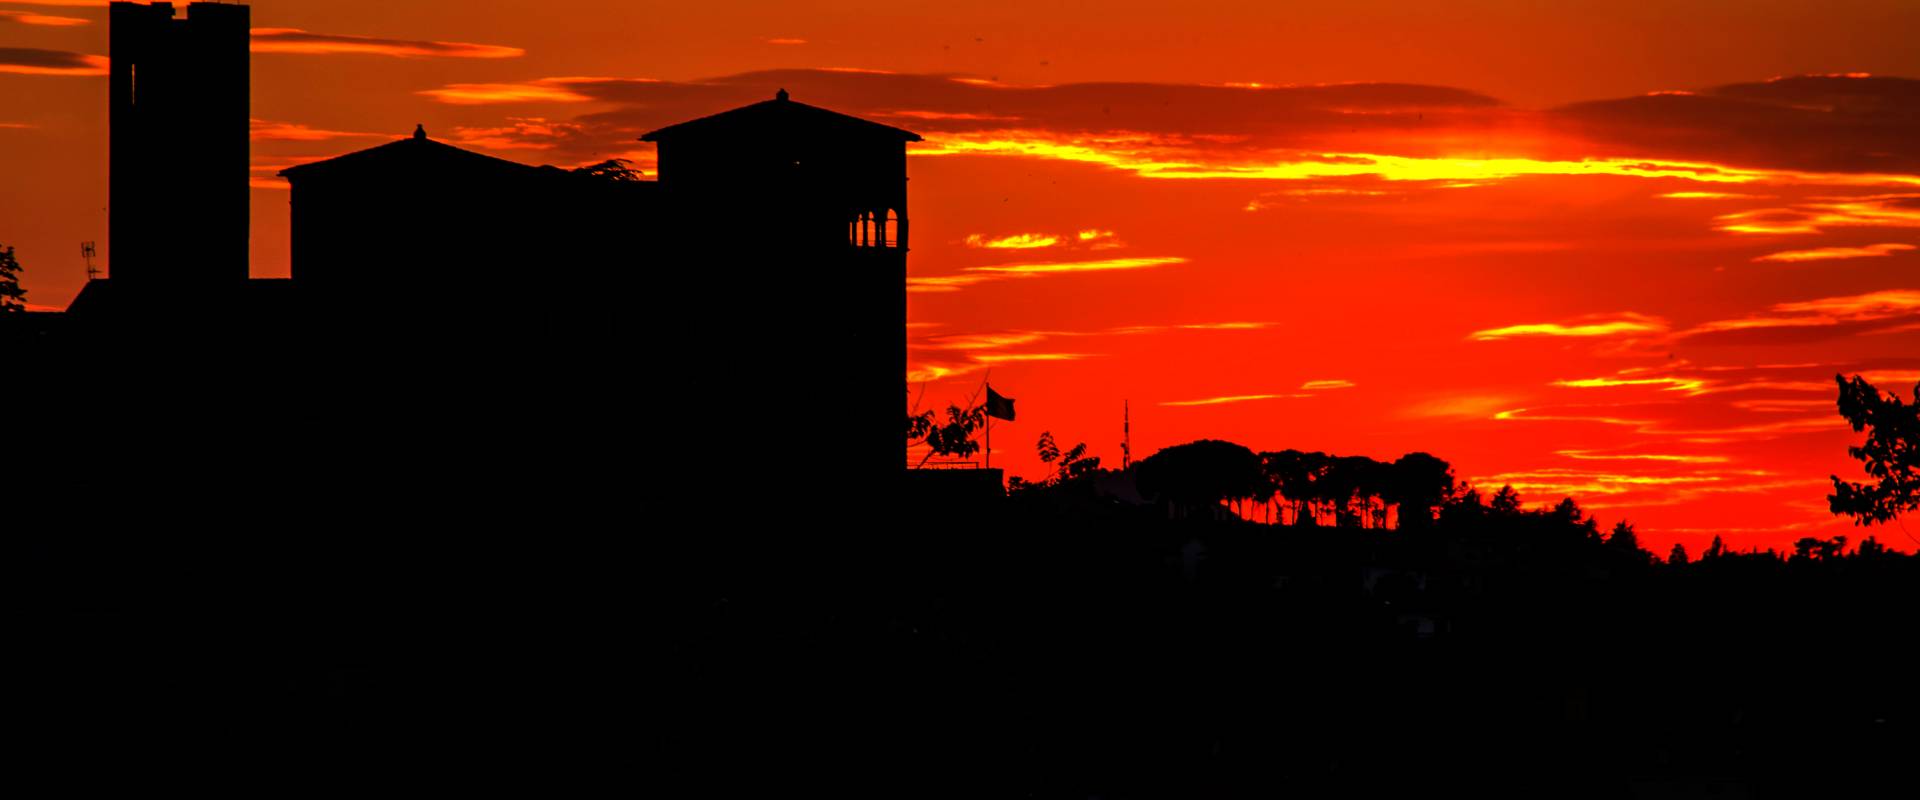 Longiano, Castello Malatestiano alla luce del tramonto foto di Marco della pasqua